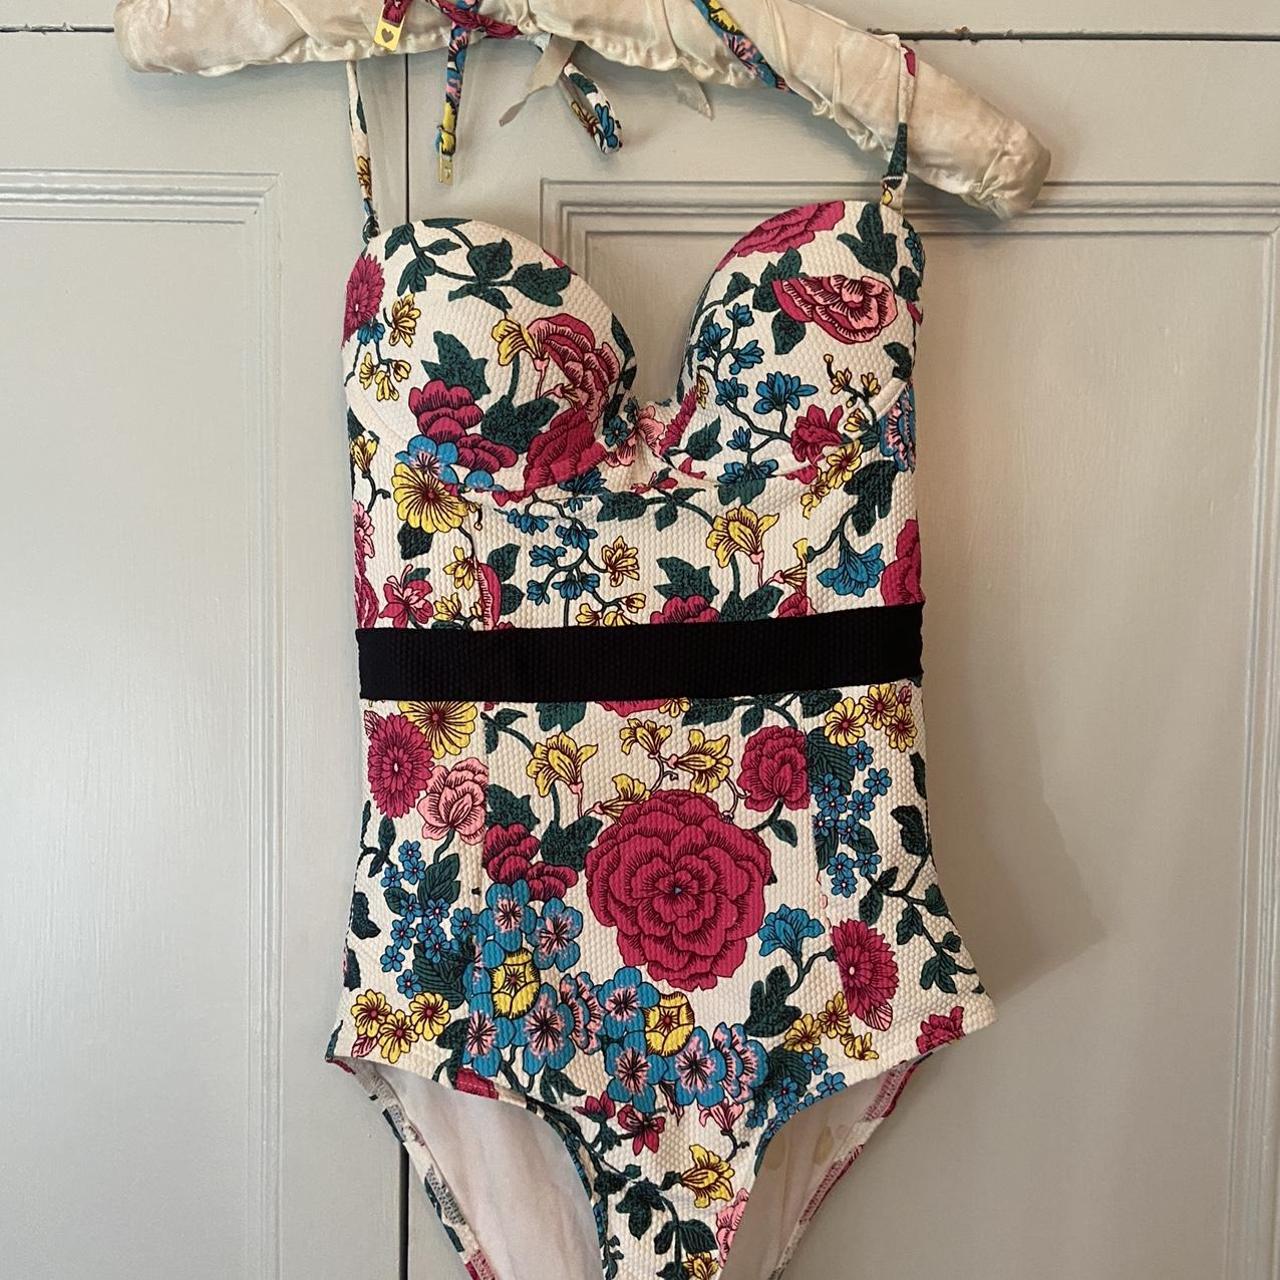 Floral halterneck swimsuit topshop size 10 - Depop